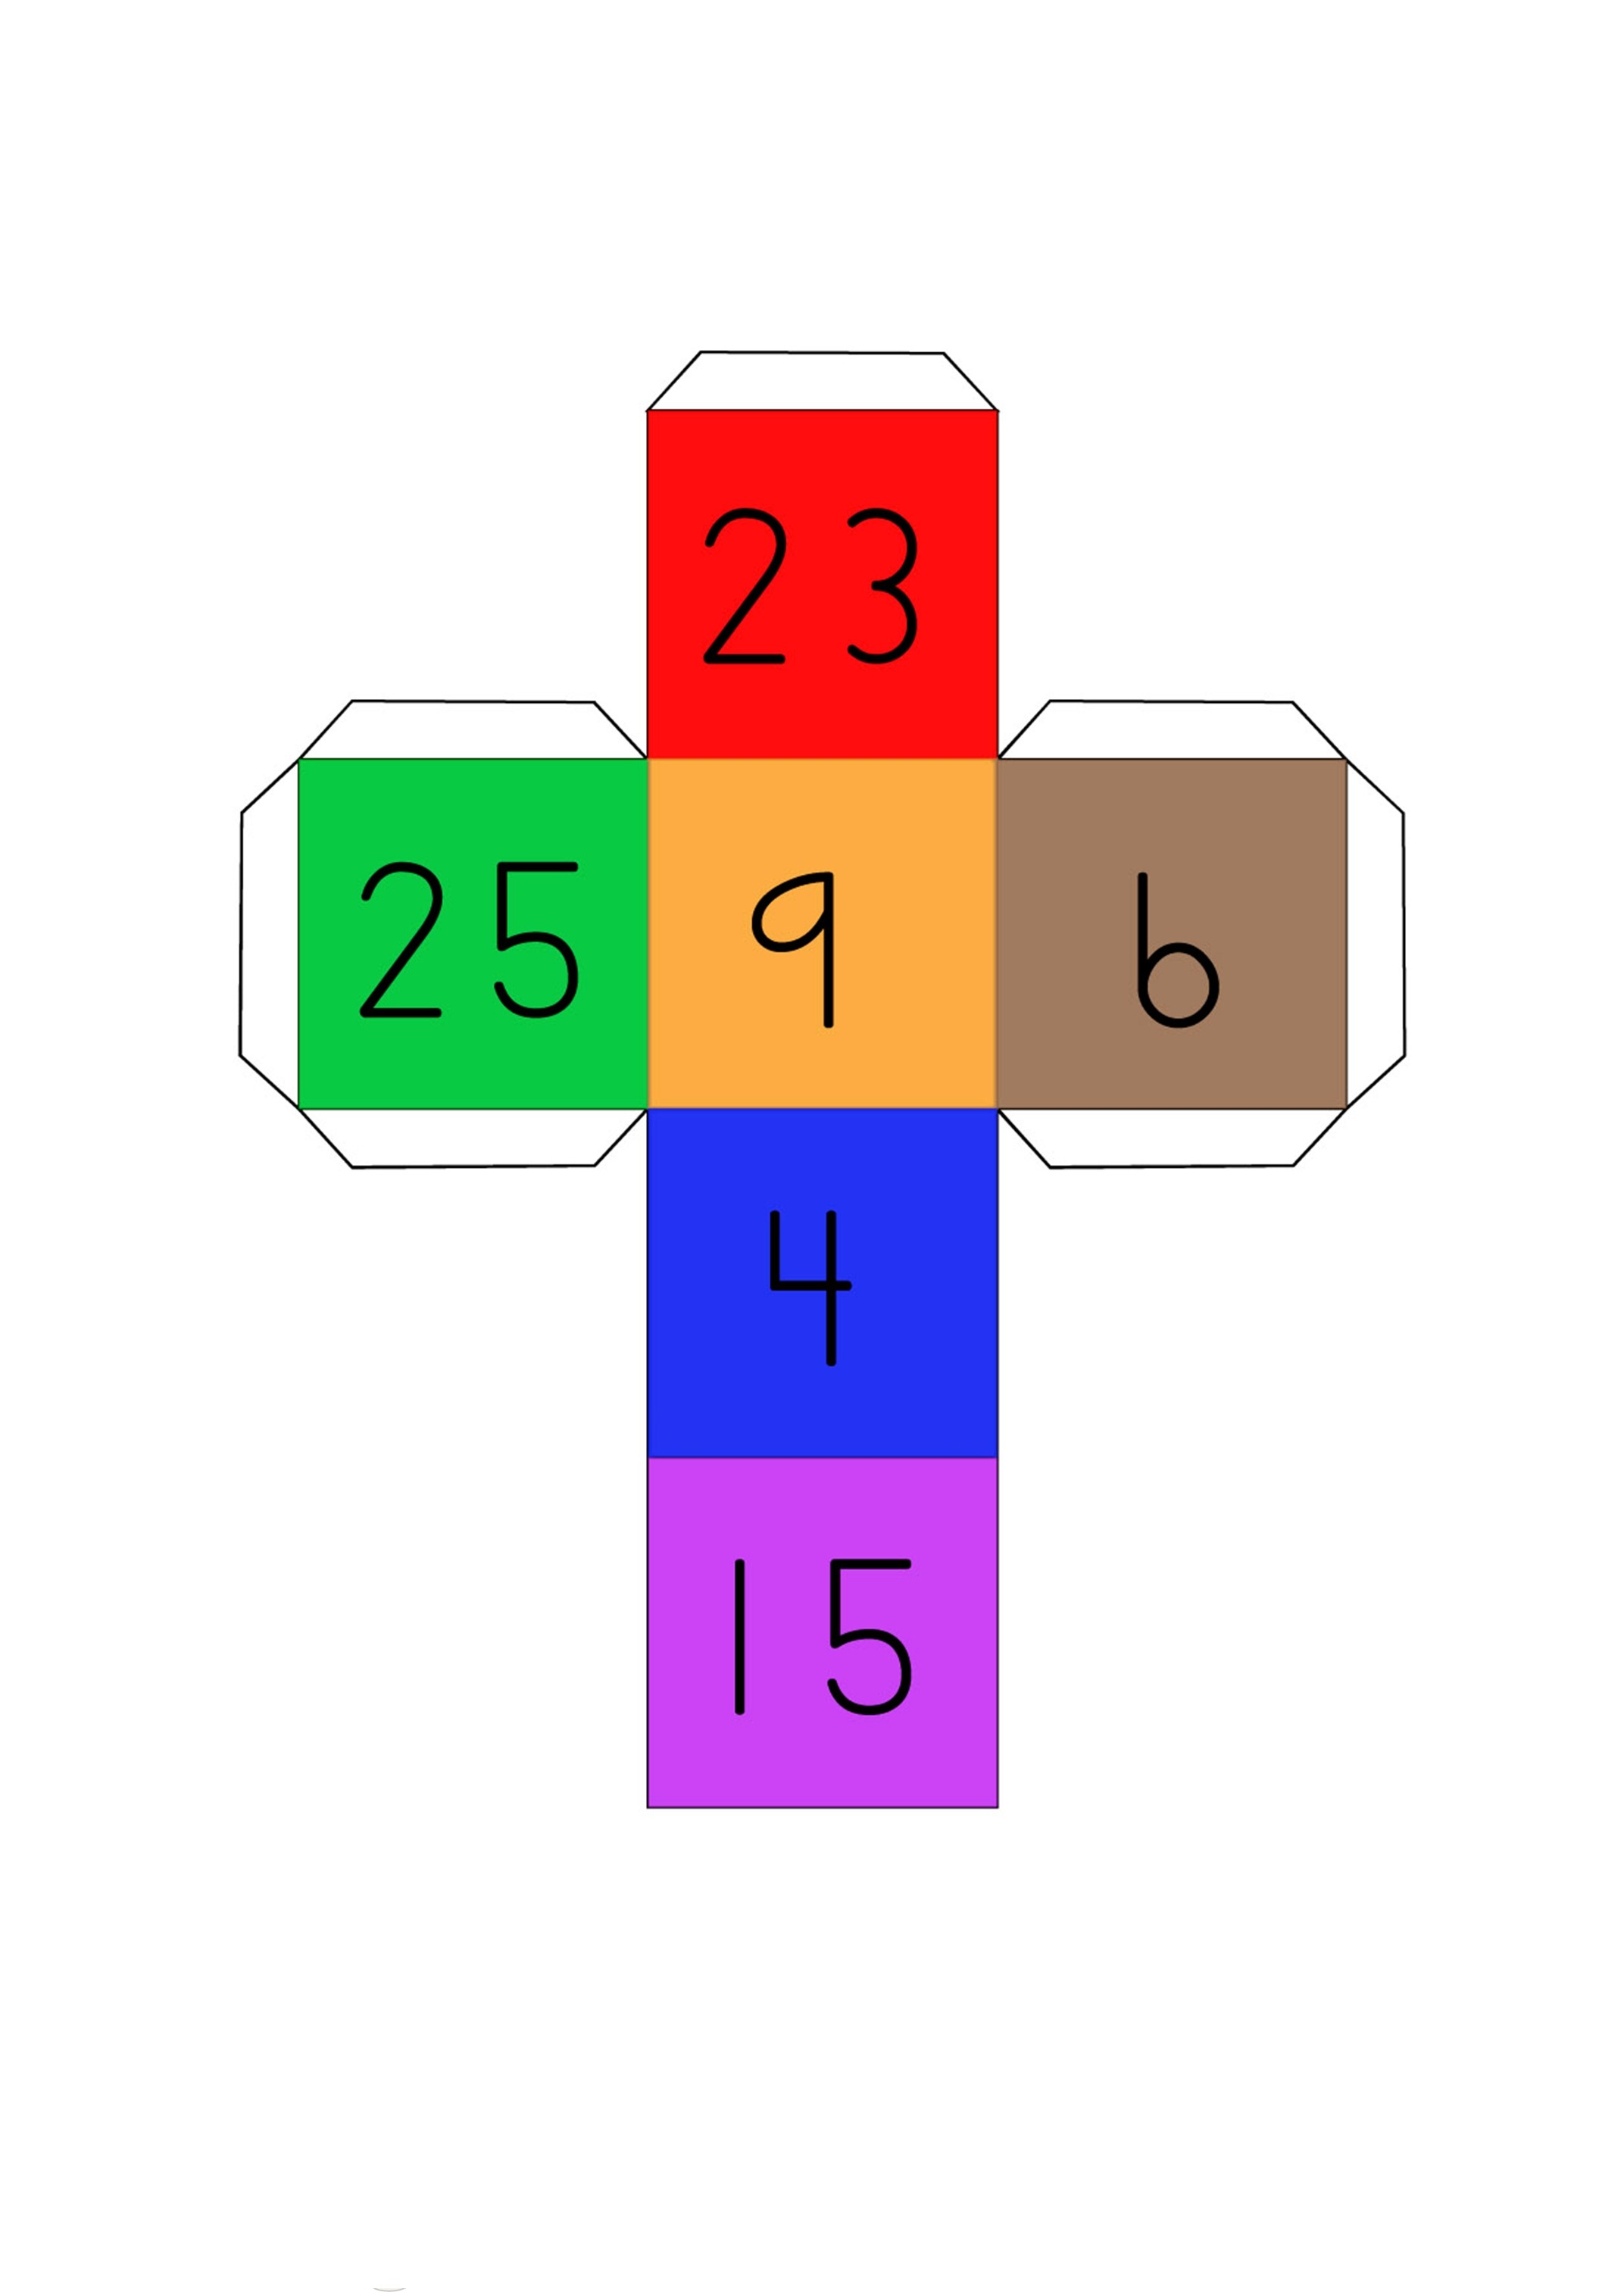 Matemaatikaga seotud mängud Cubico16